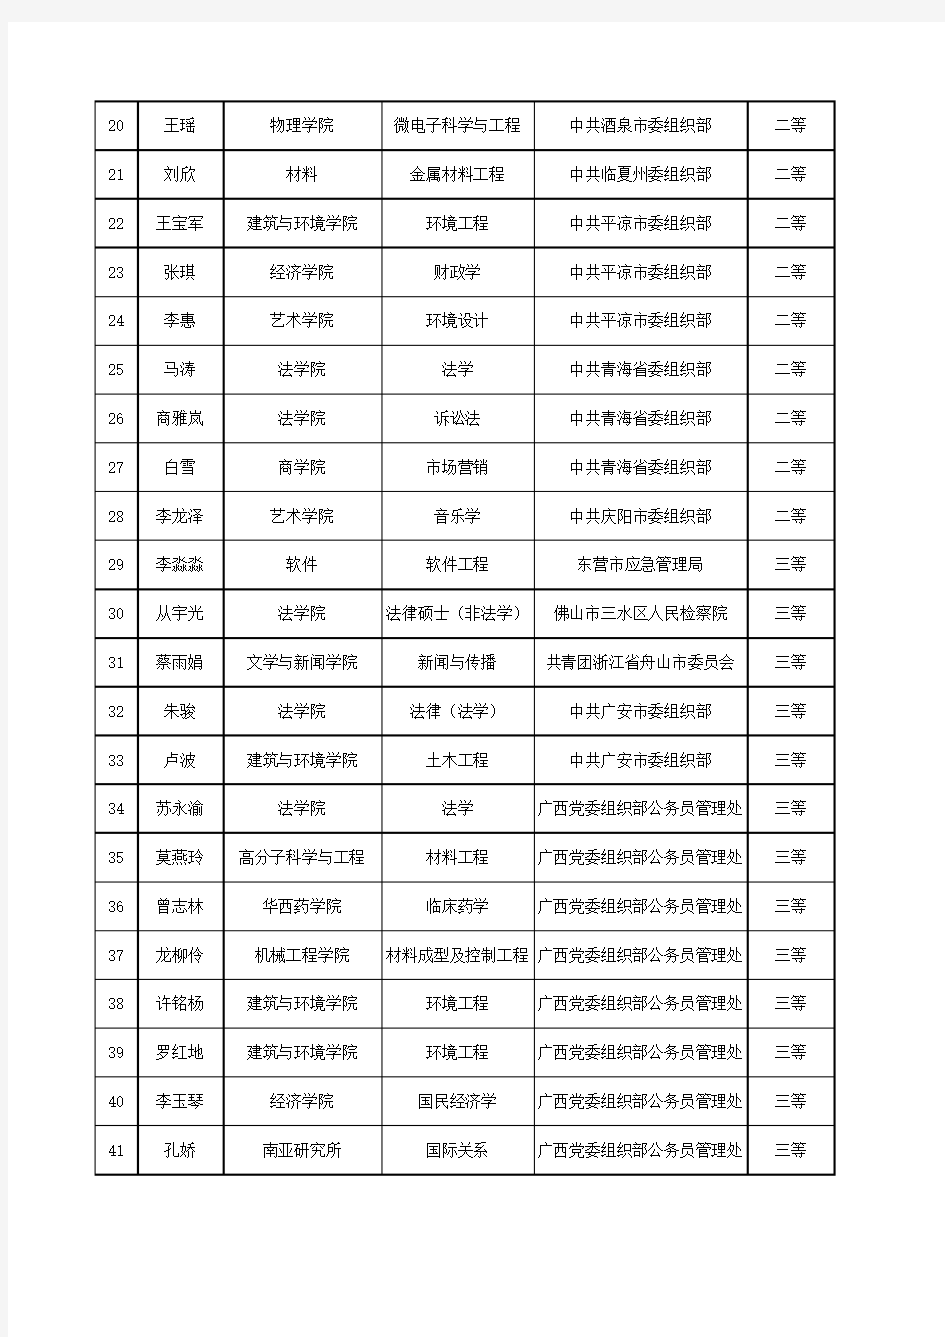 四川大学2019届毕业生就业奖学金公示名单